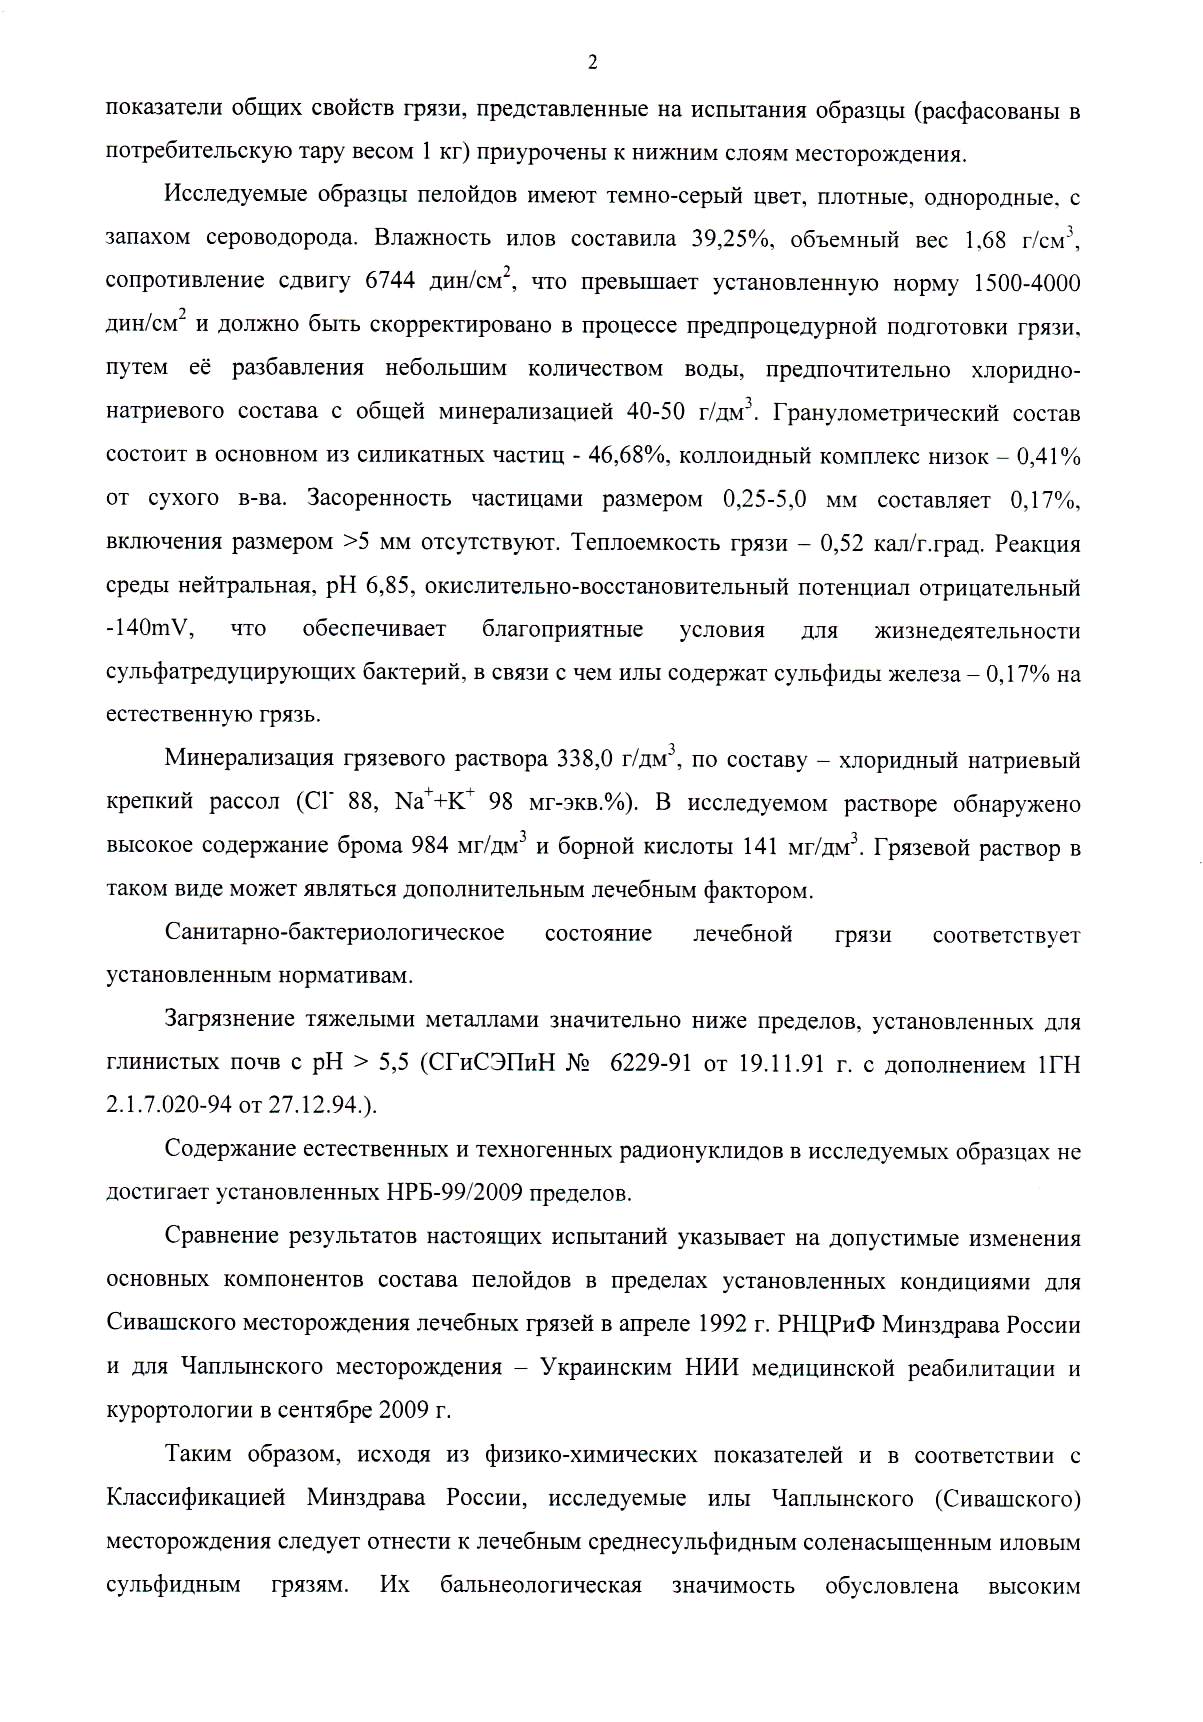 Бальнеологическое заключение о лечебных грязях Сиваш в России страница2